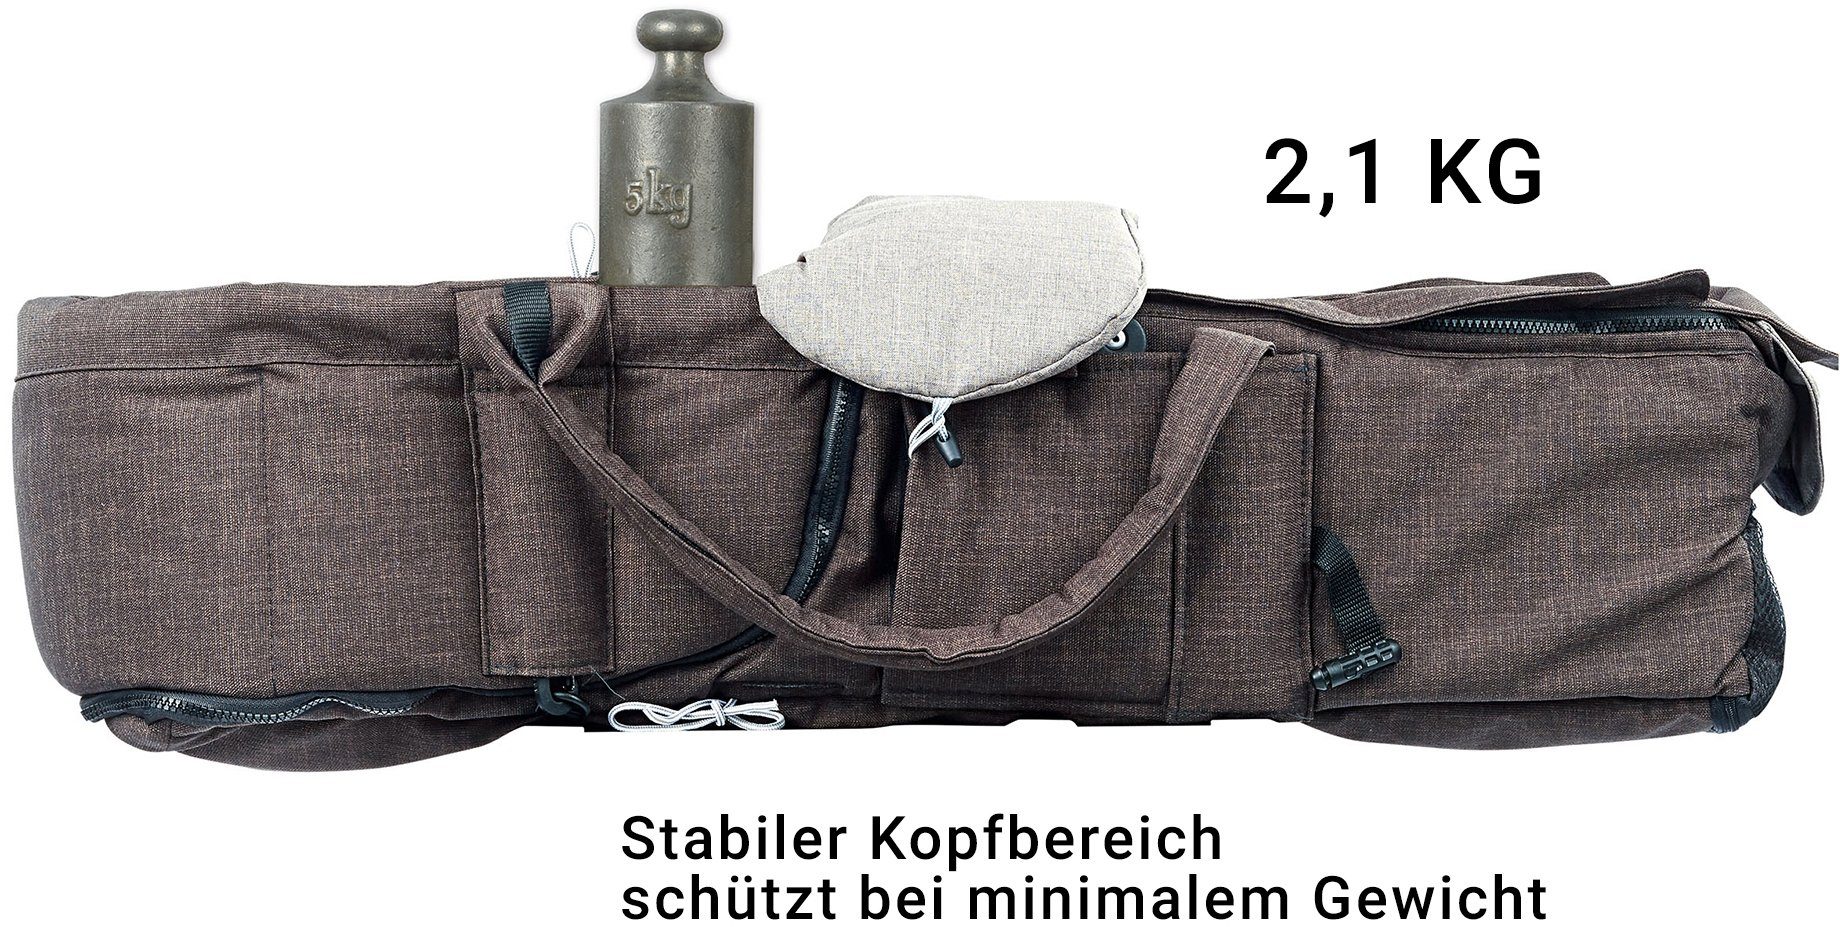 aus grau Lift; Deutschland Kombi-Kinderwagen eloxiert/tabak, F10 & Handarbeit C1 Tragetasche Gesslein Design meliert/Streifen, Air+, mit